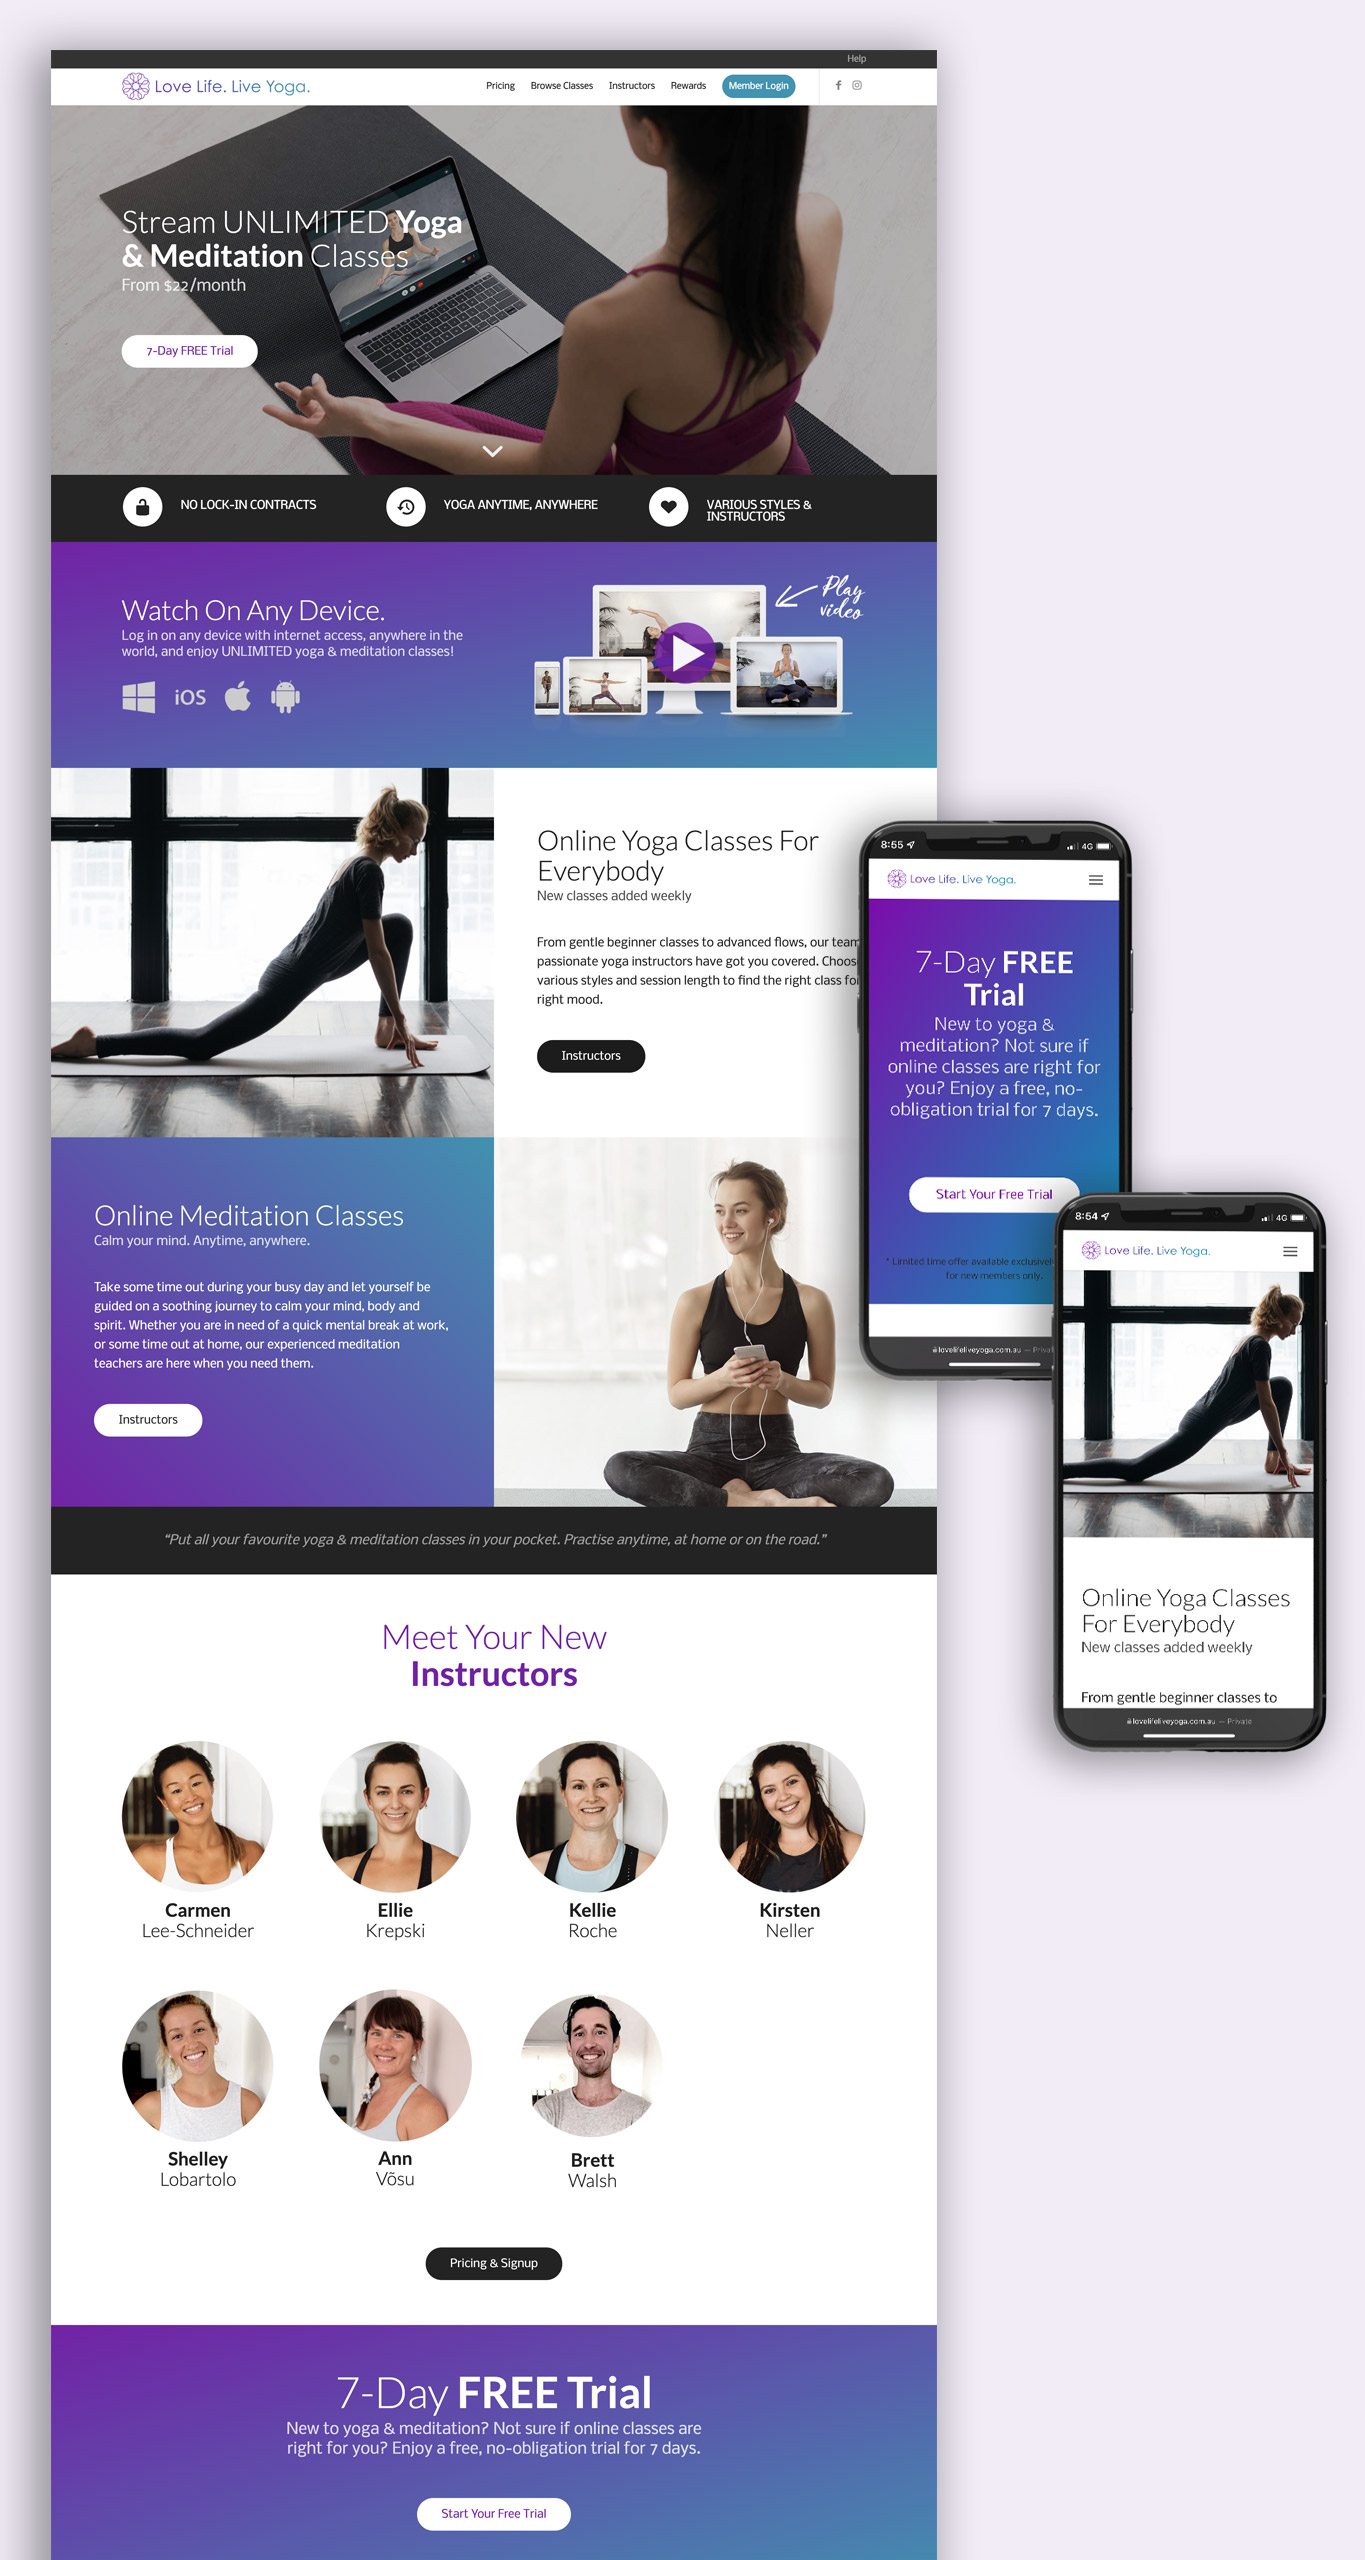 Website Design for Online Yoga Platform - Brisbane Digital Marketing Agency FlySocial Digital